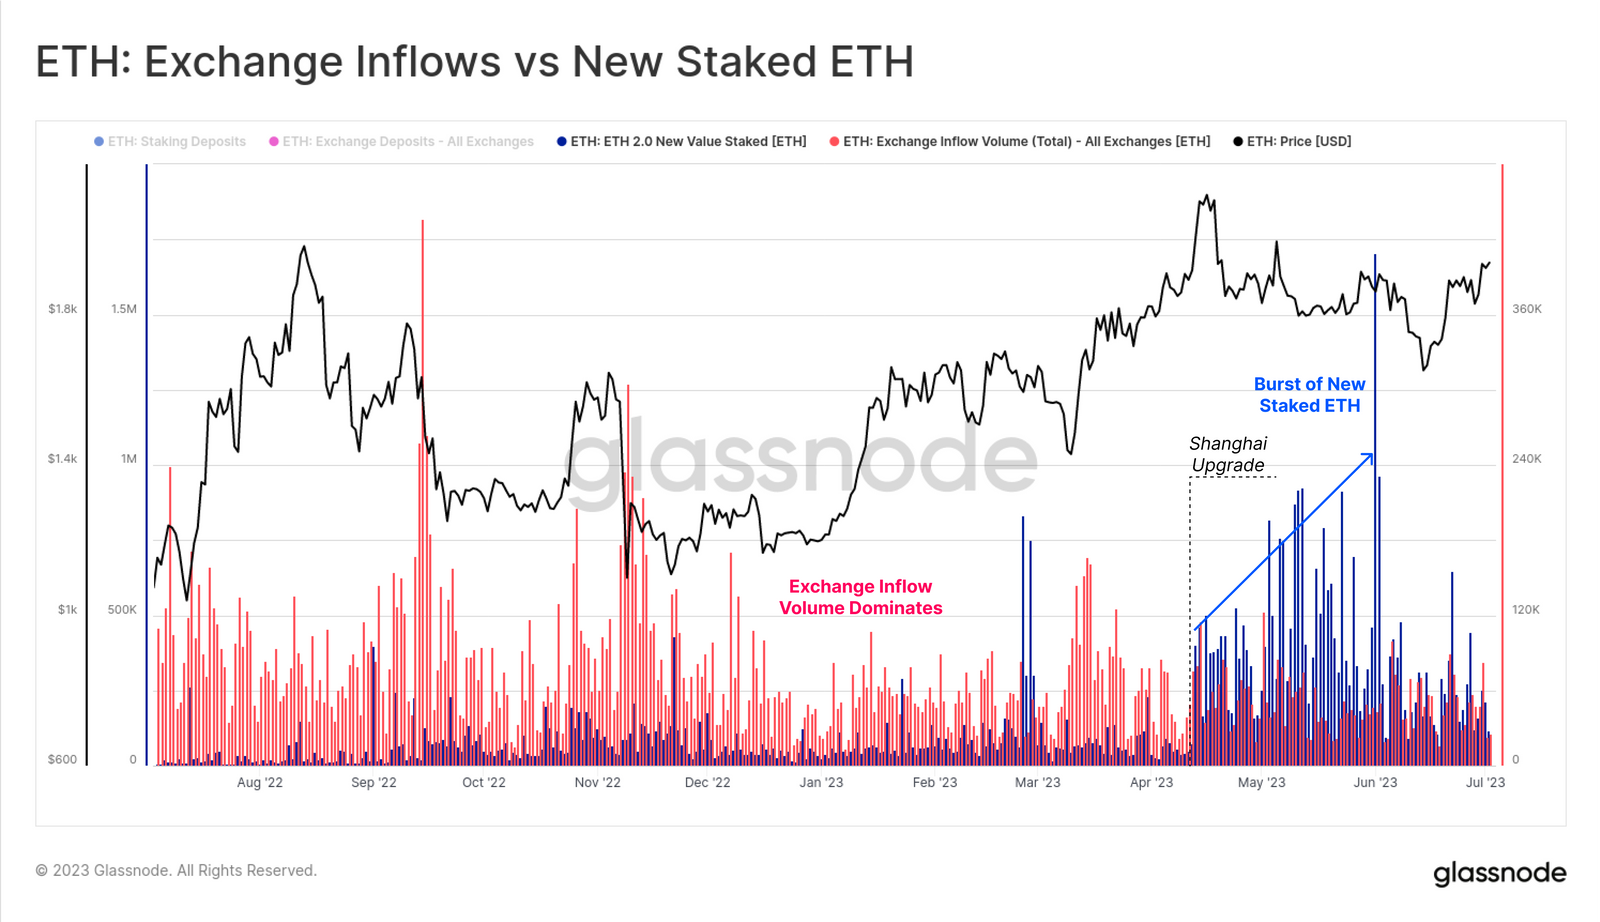 Depósitos de ETH en exchanges vs. nuevos ETH en staking